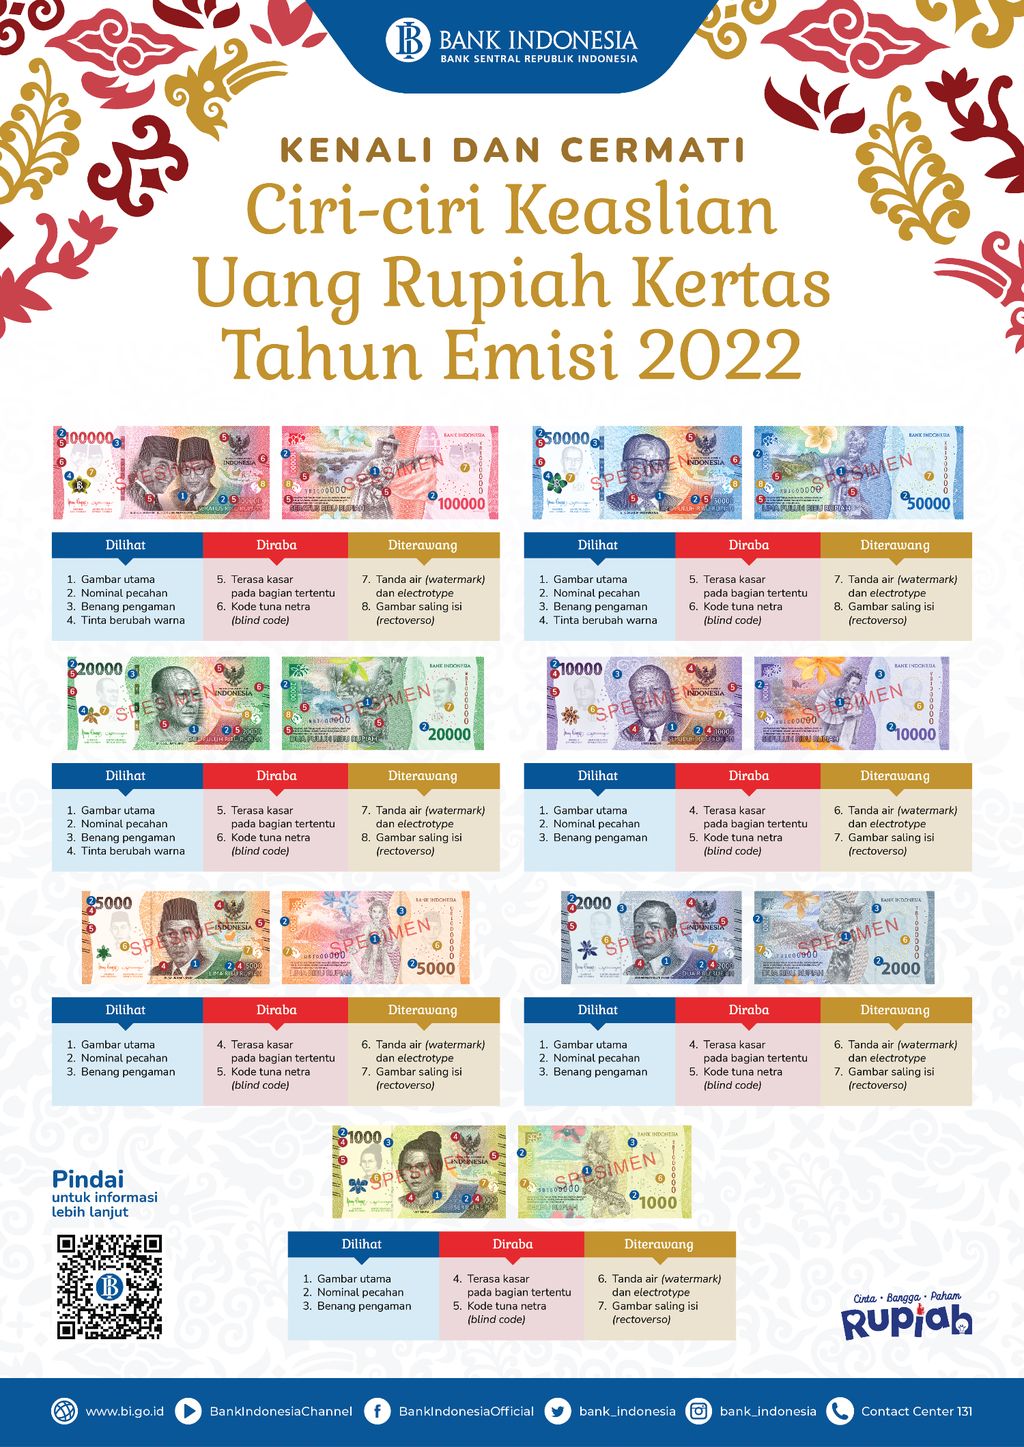 Ciri-ciri Keaslian Uang Rupiah Kertas Tahun Emisi 2022. (Dok. Bank Indonesia)